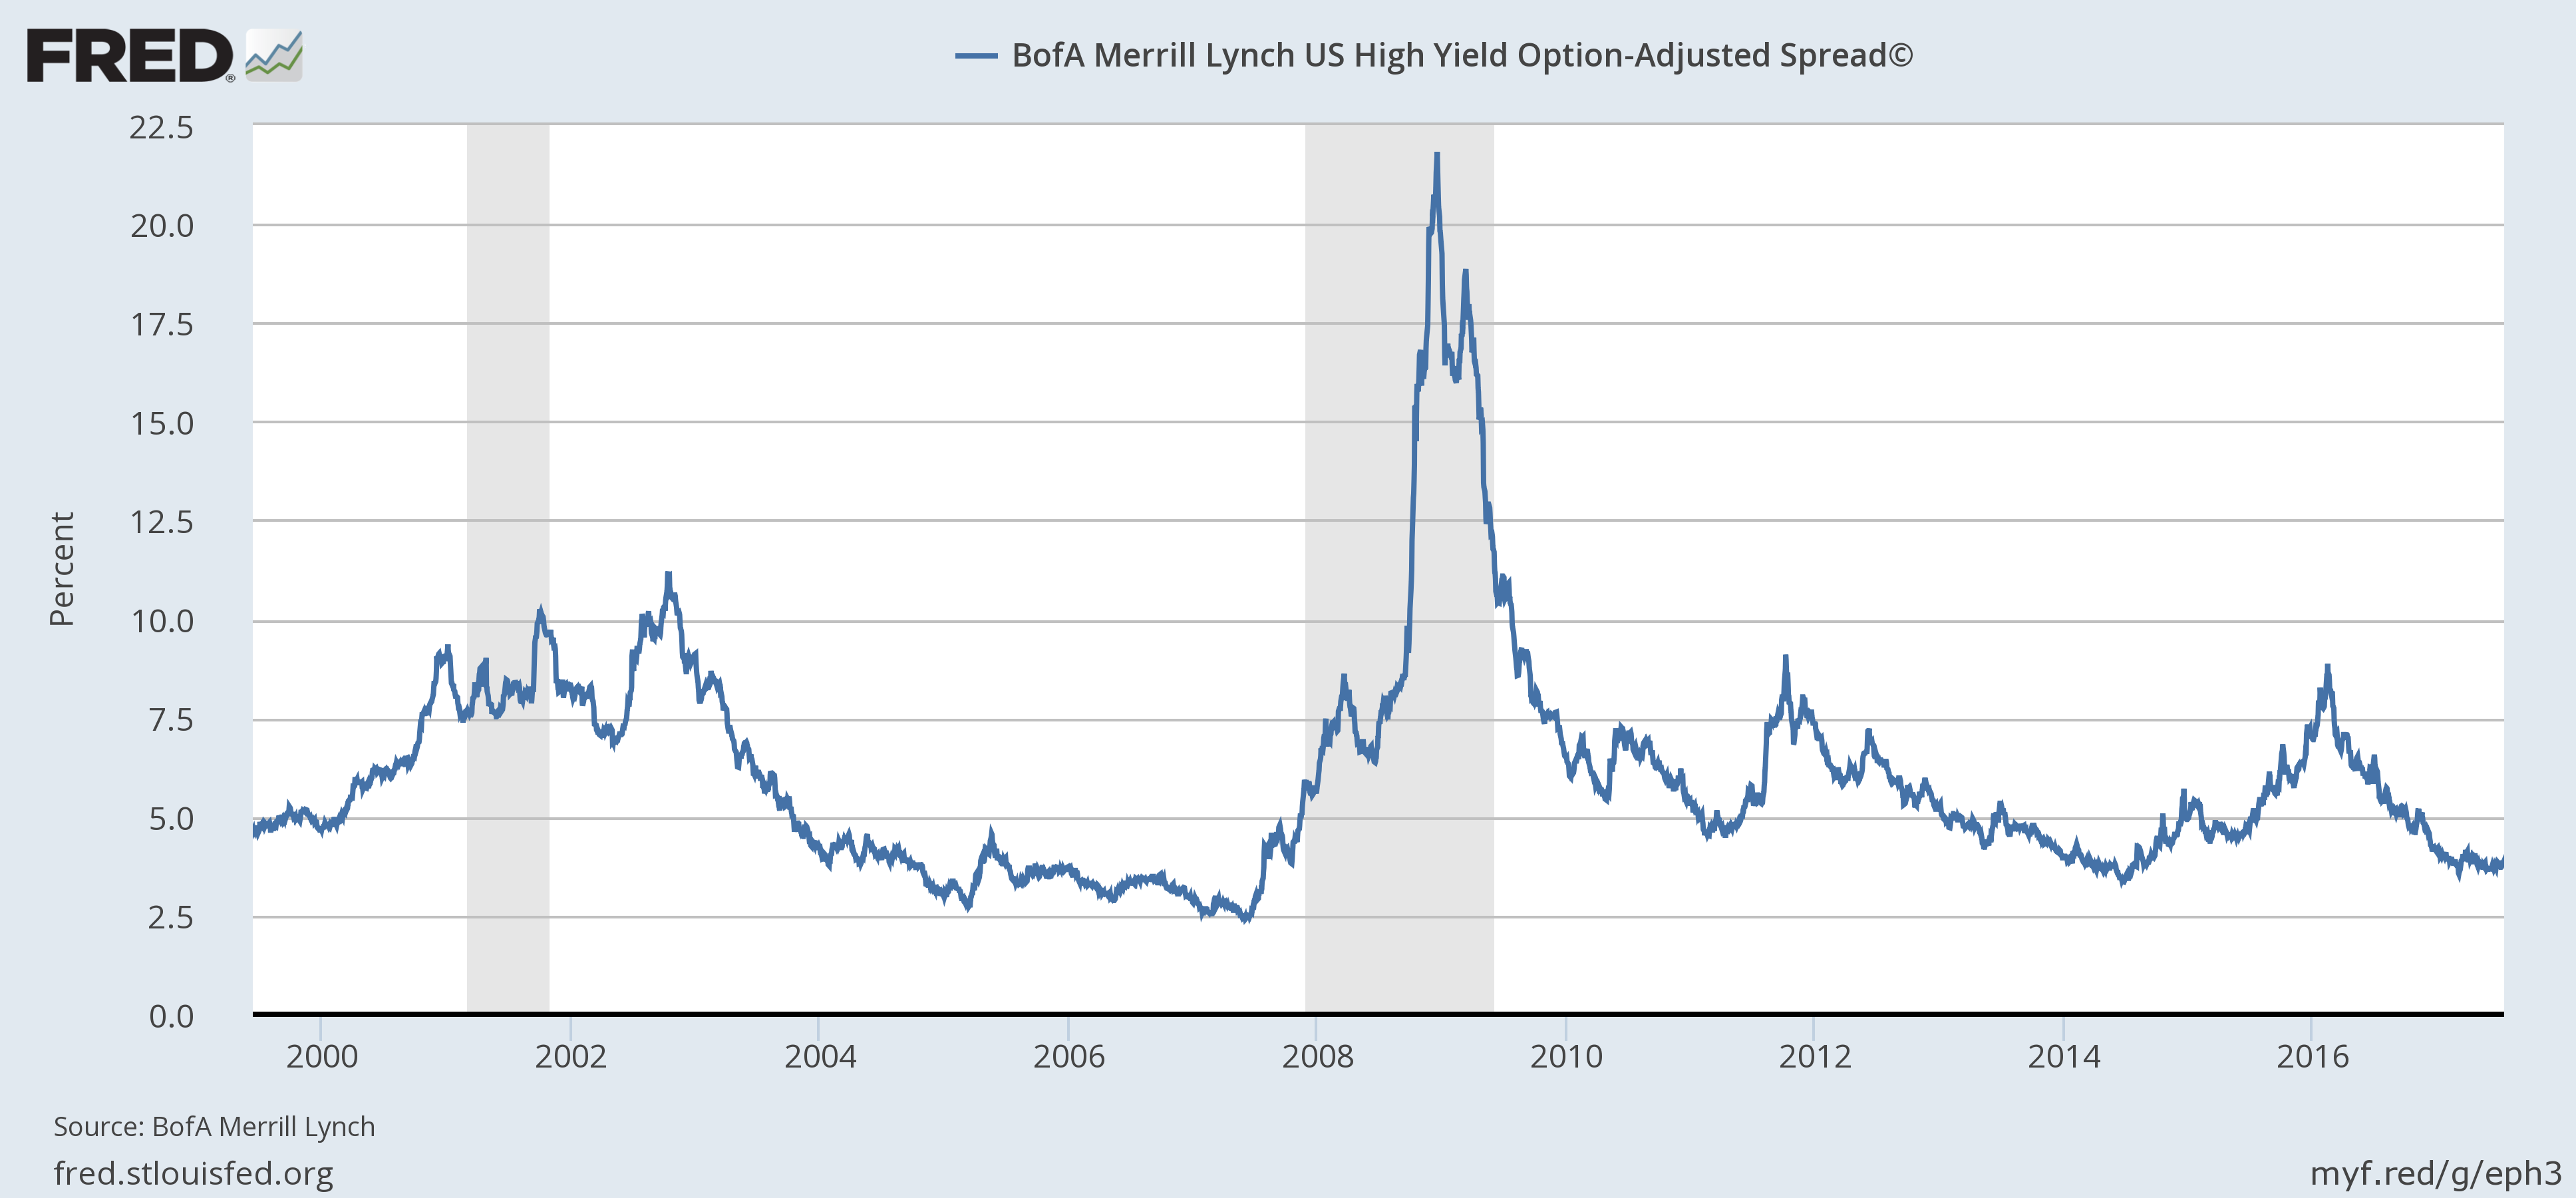 Bofa Merrill Lynch US High Yield Option-Adjusted Spread